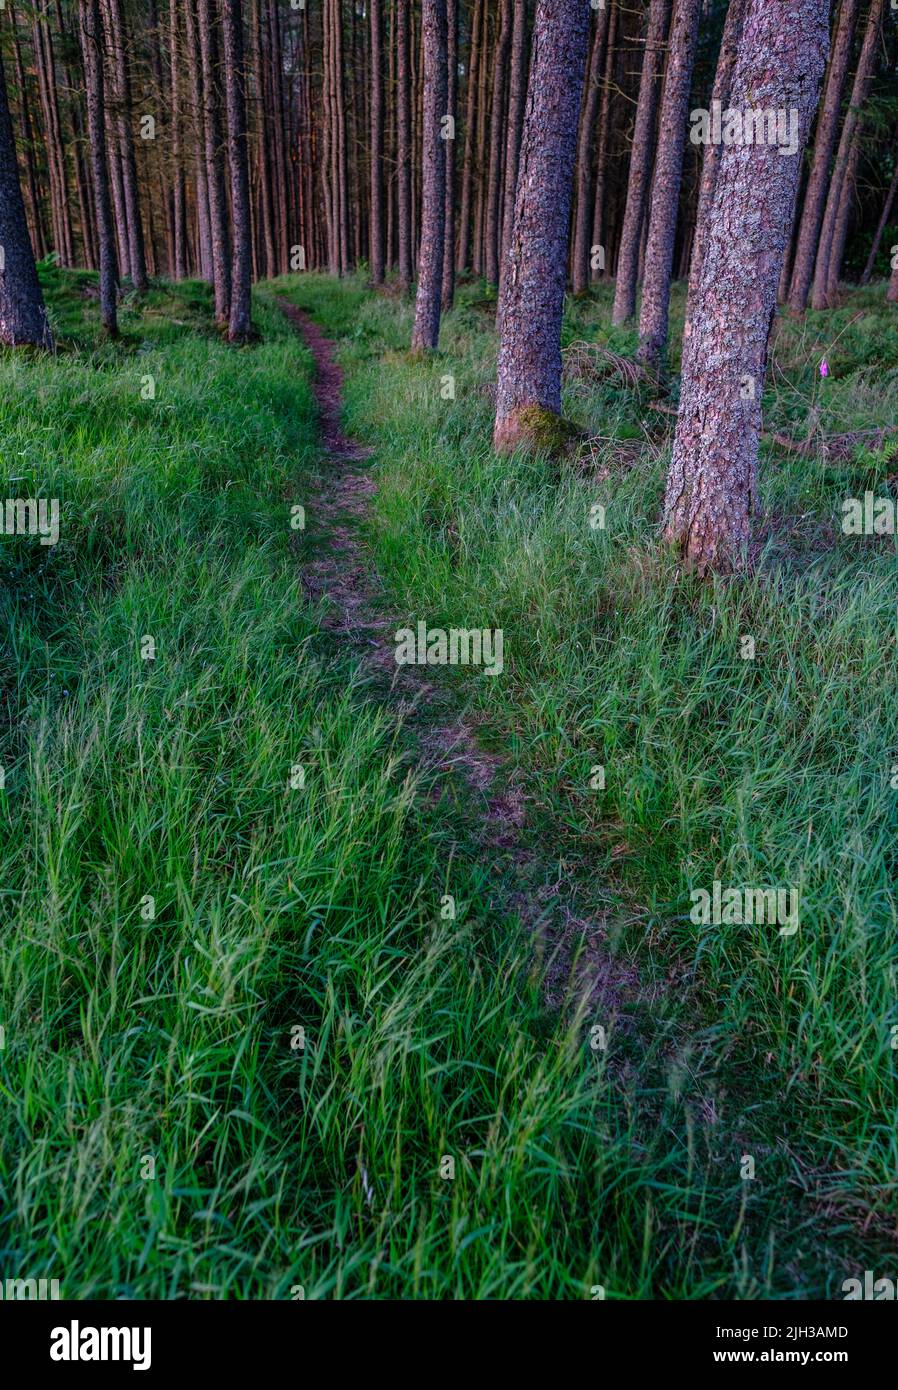 Imagen Conceptual de lo Desconocido, con un Camino del Bosque que conduce a la distancia Foto de stock